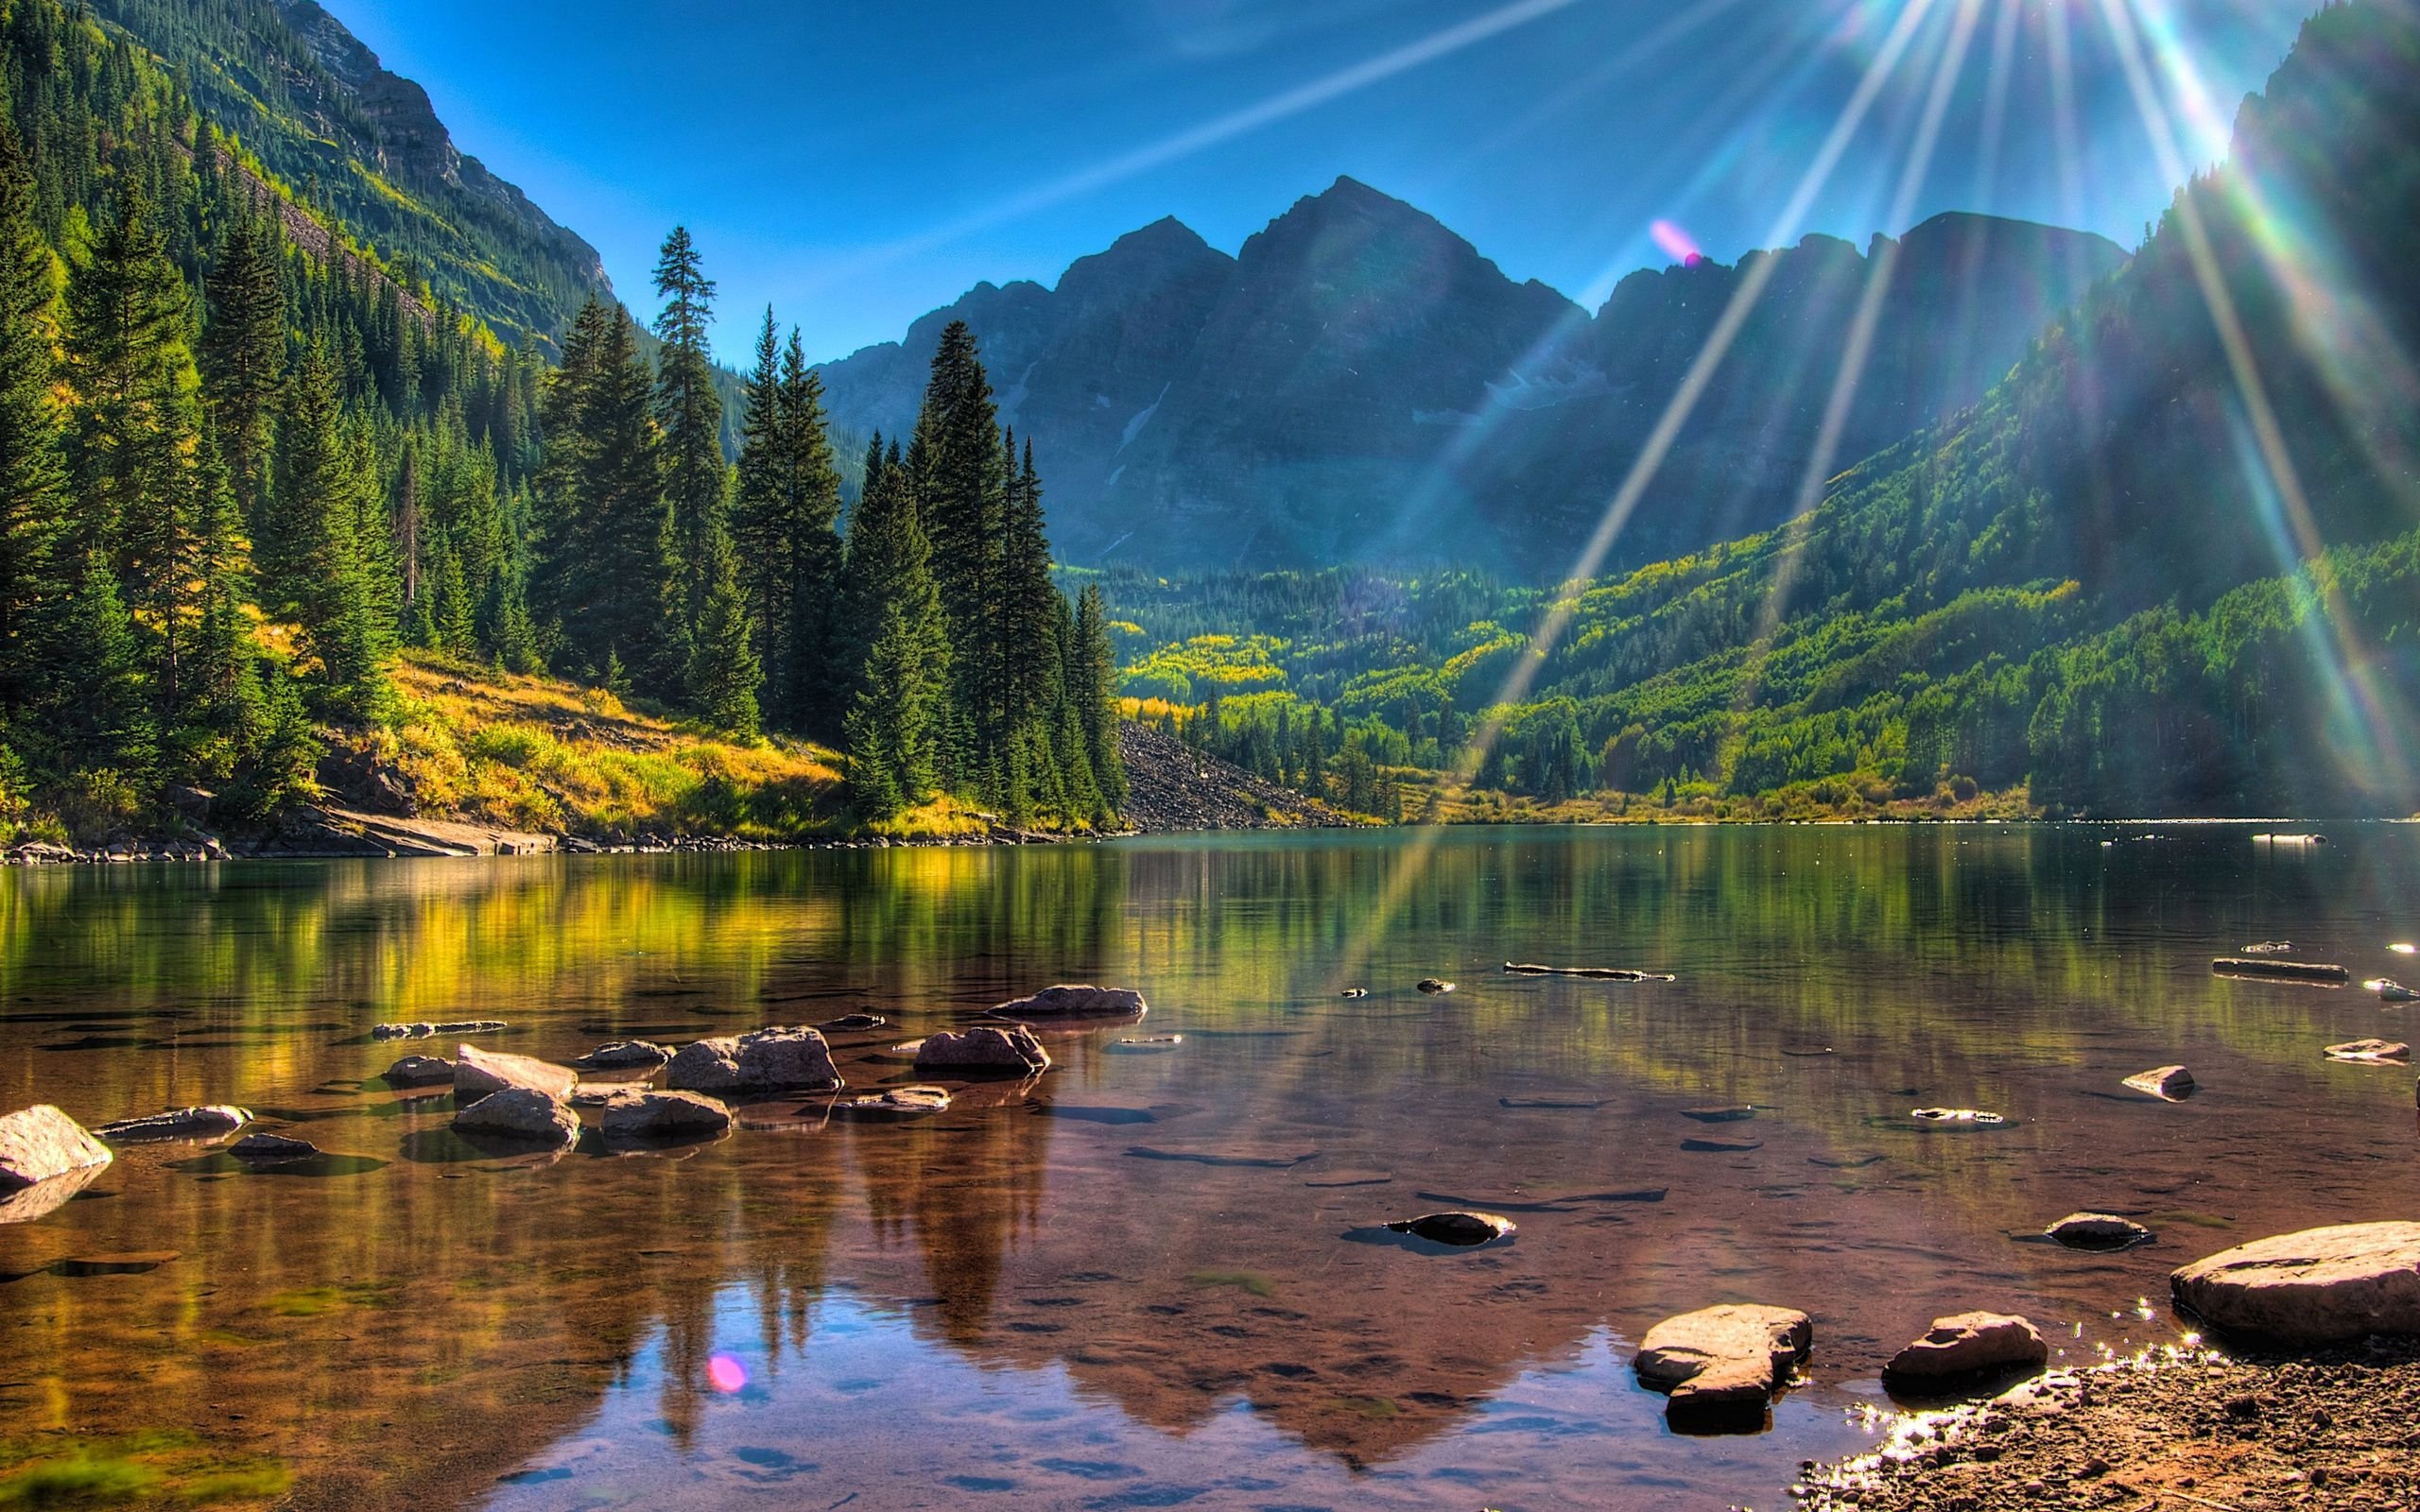 Обои на телефон самые красивые в мире. Озеро марун Колорадо. Марун Беллс Колорадо США. Горы, озеро лес 1920 США. Красивая природа.